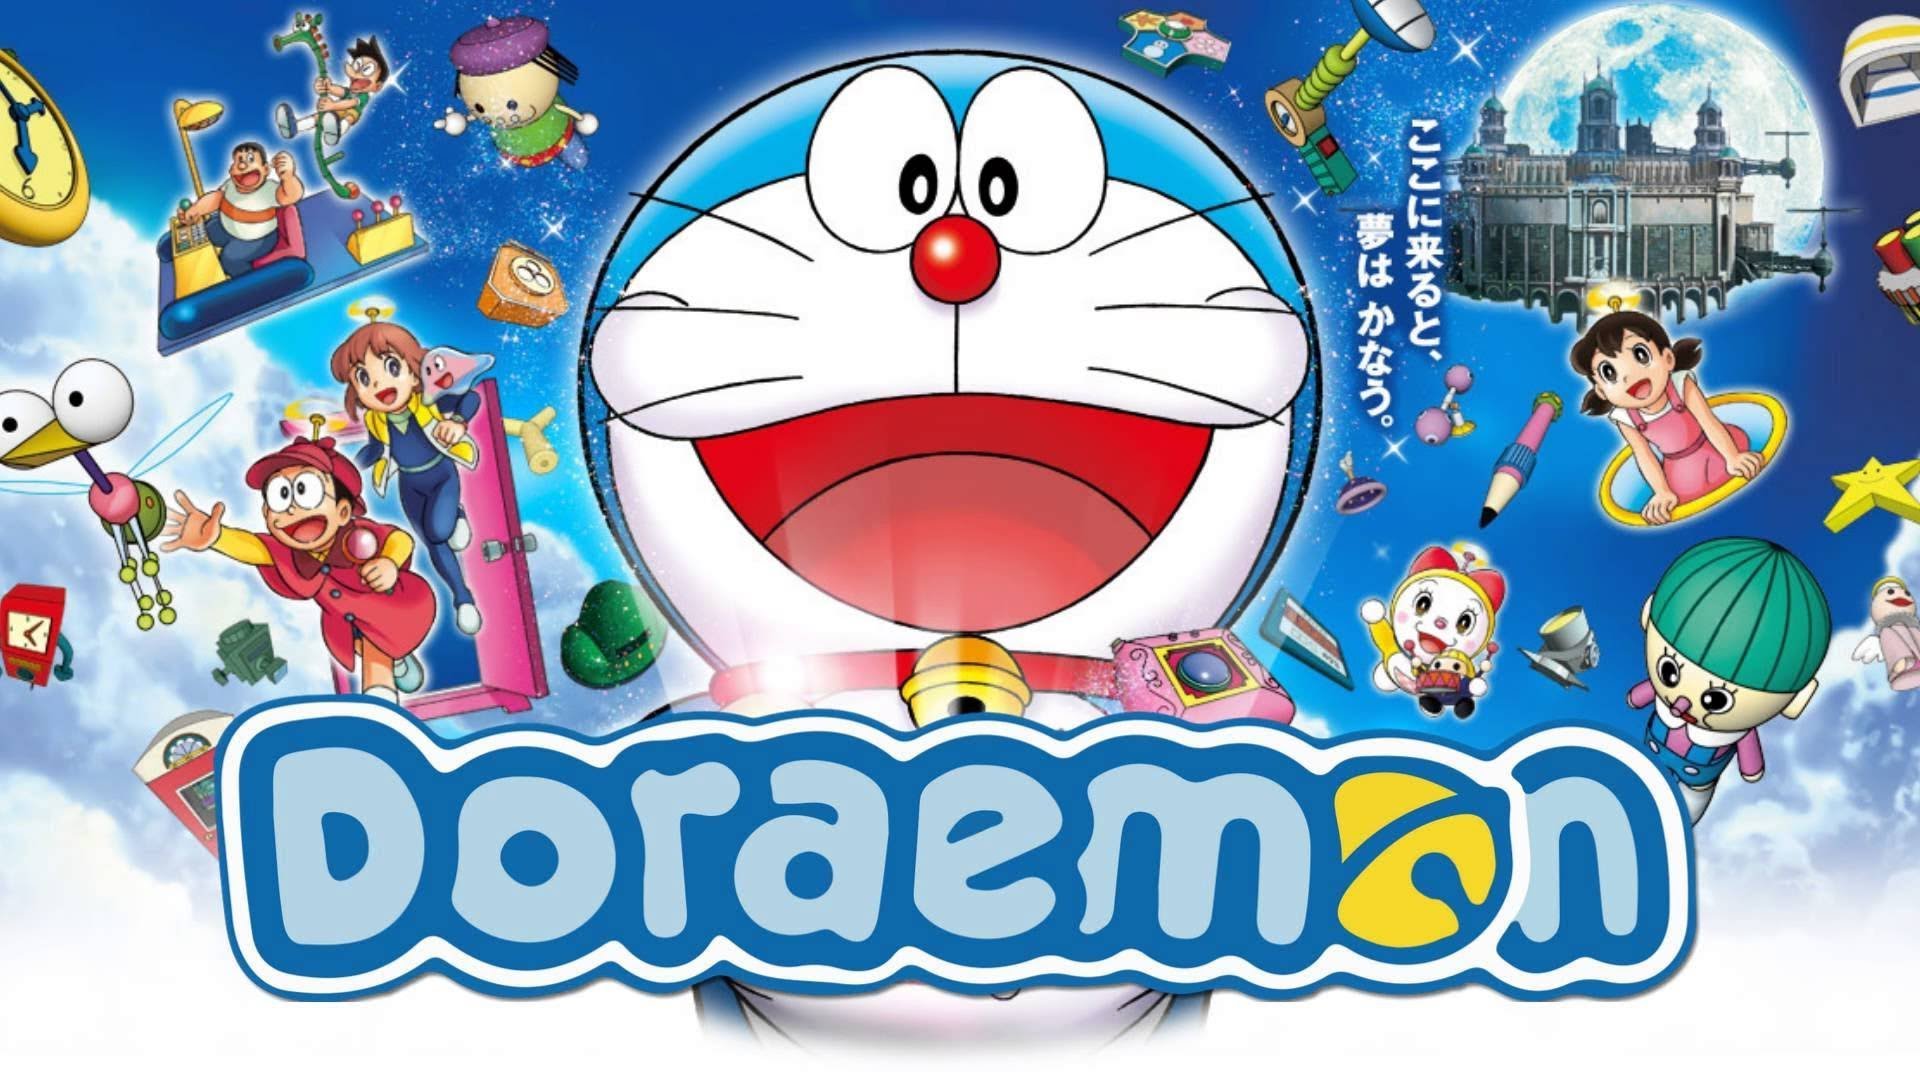 Bạn muốn biết Doraemon sở hữu một khẩu súng kỳ diệu như thế nào? Hãy xem thử hình ảnh về chiếc súng kỳ diệu đó để khám phá những tính năng thần kỳ cùng với Doraemon và nhóm bạn của mình nhé!